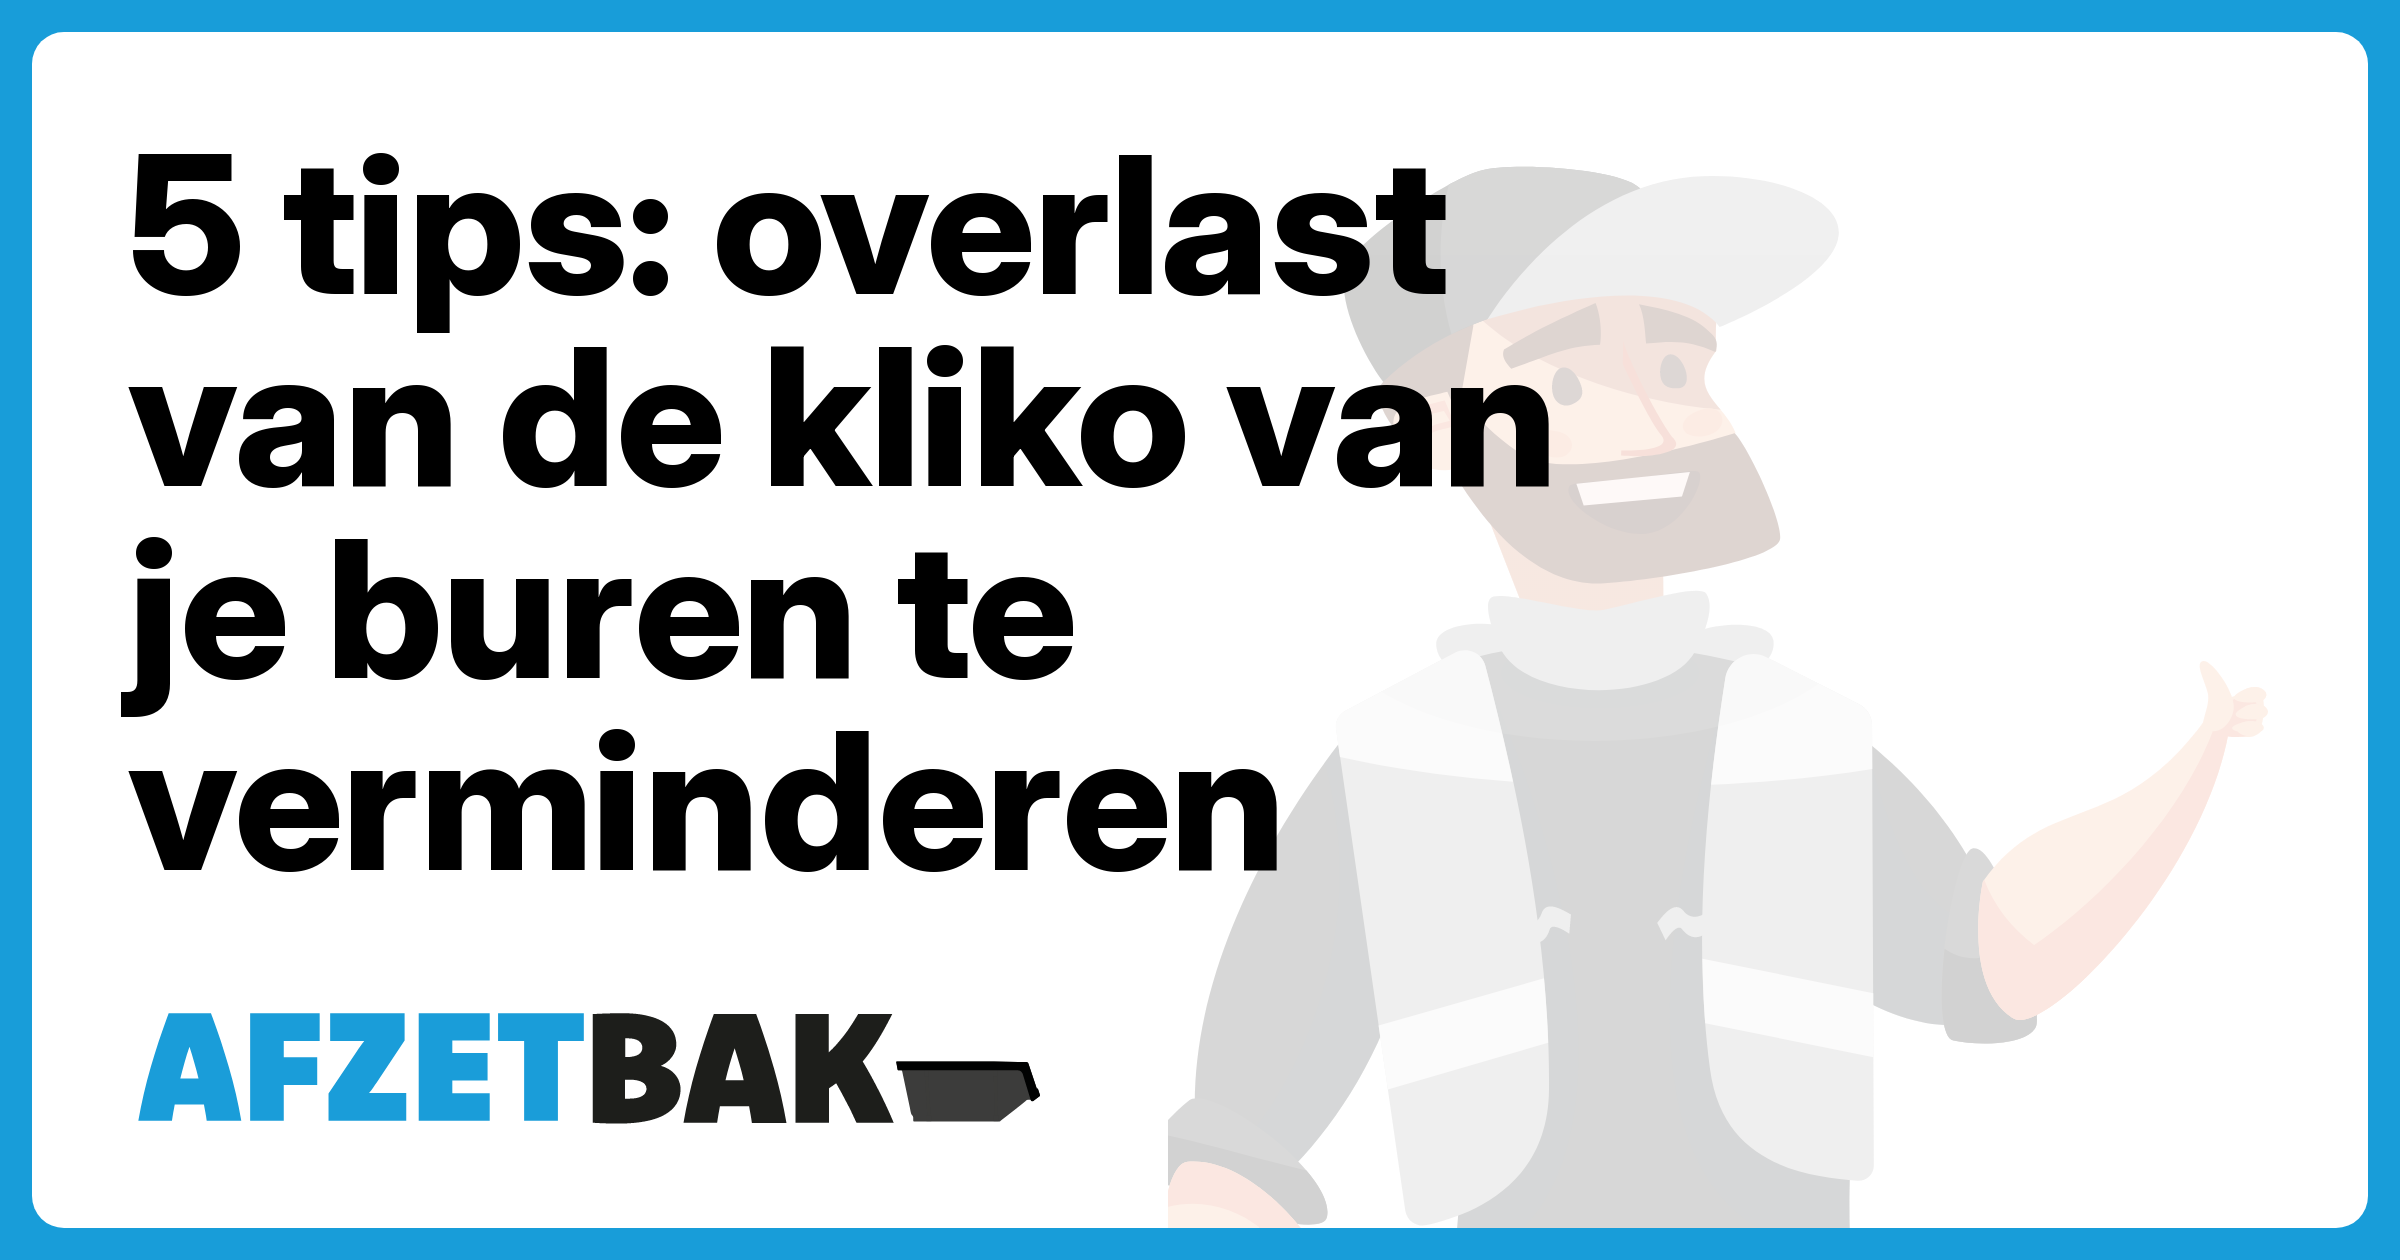 5 tips: overlast van de kliko van je buren te verminderen - Afzetbak.nl